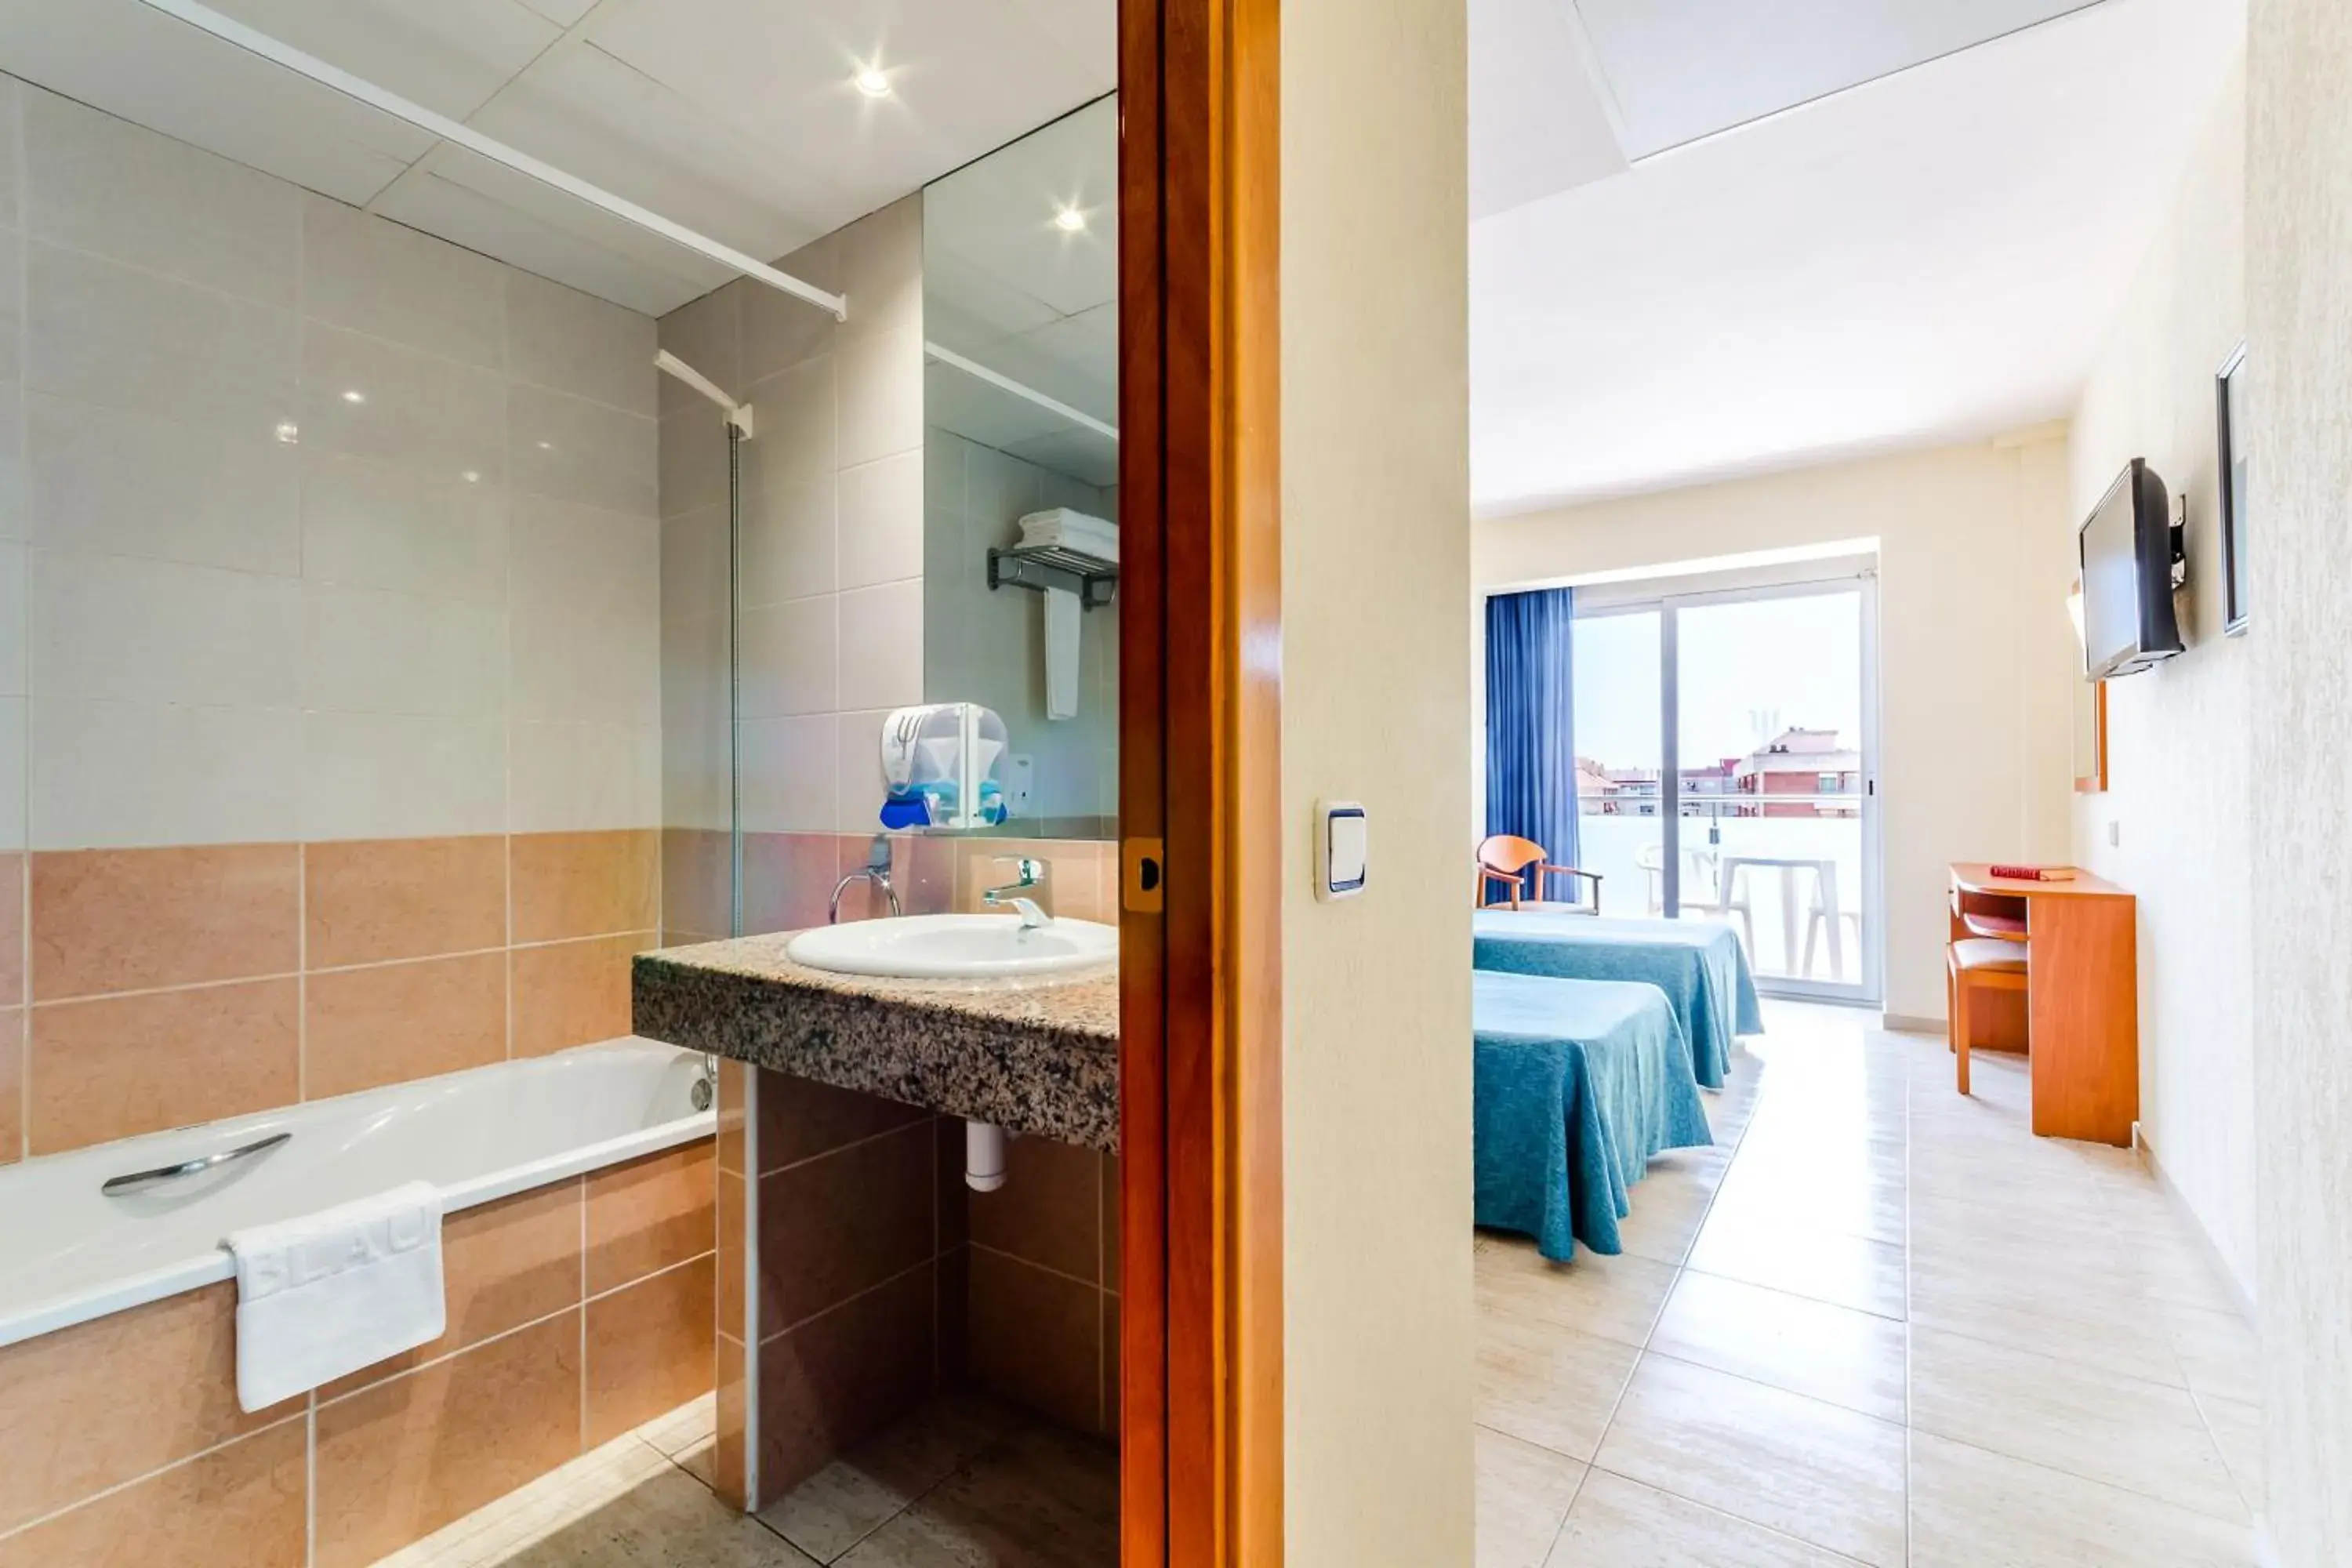 Bedroom, Bathroom in Hotel Mar Blau